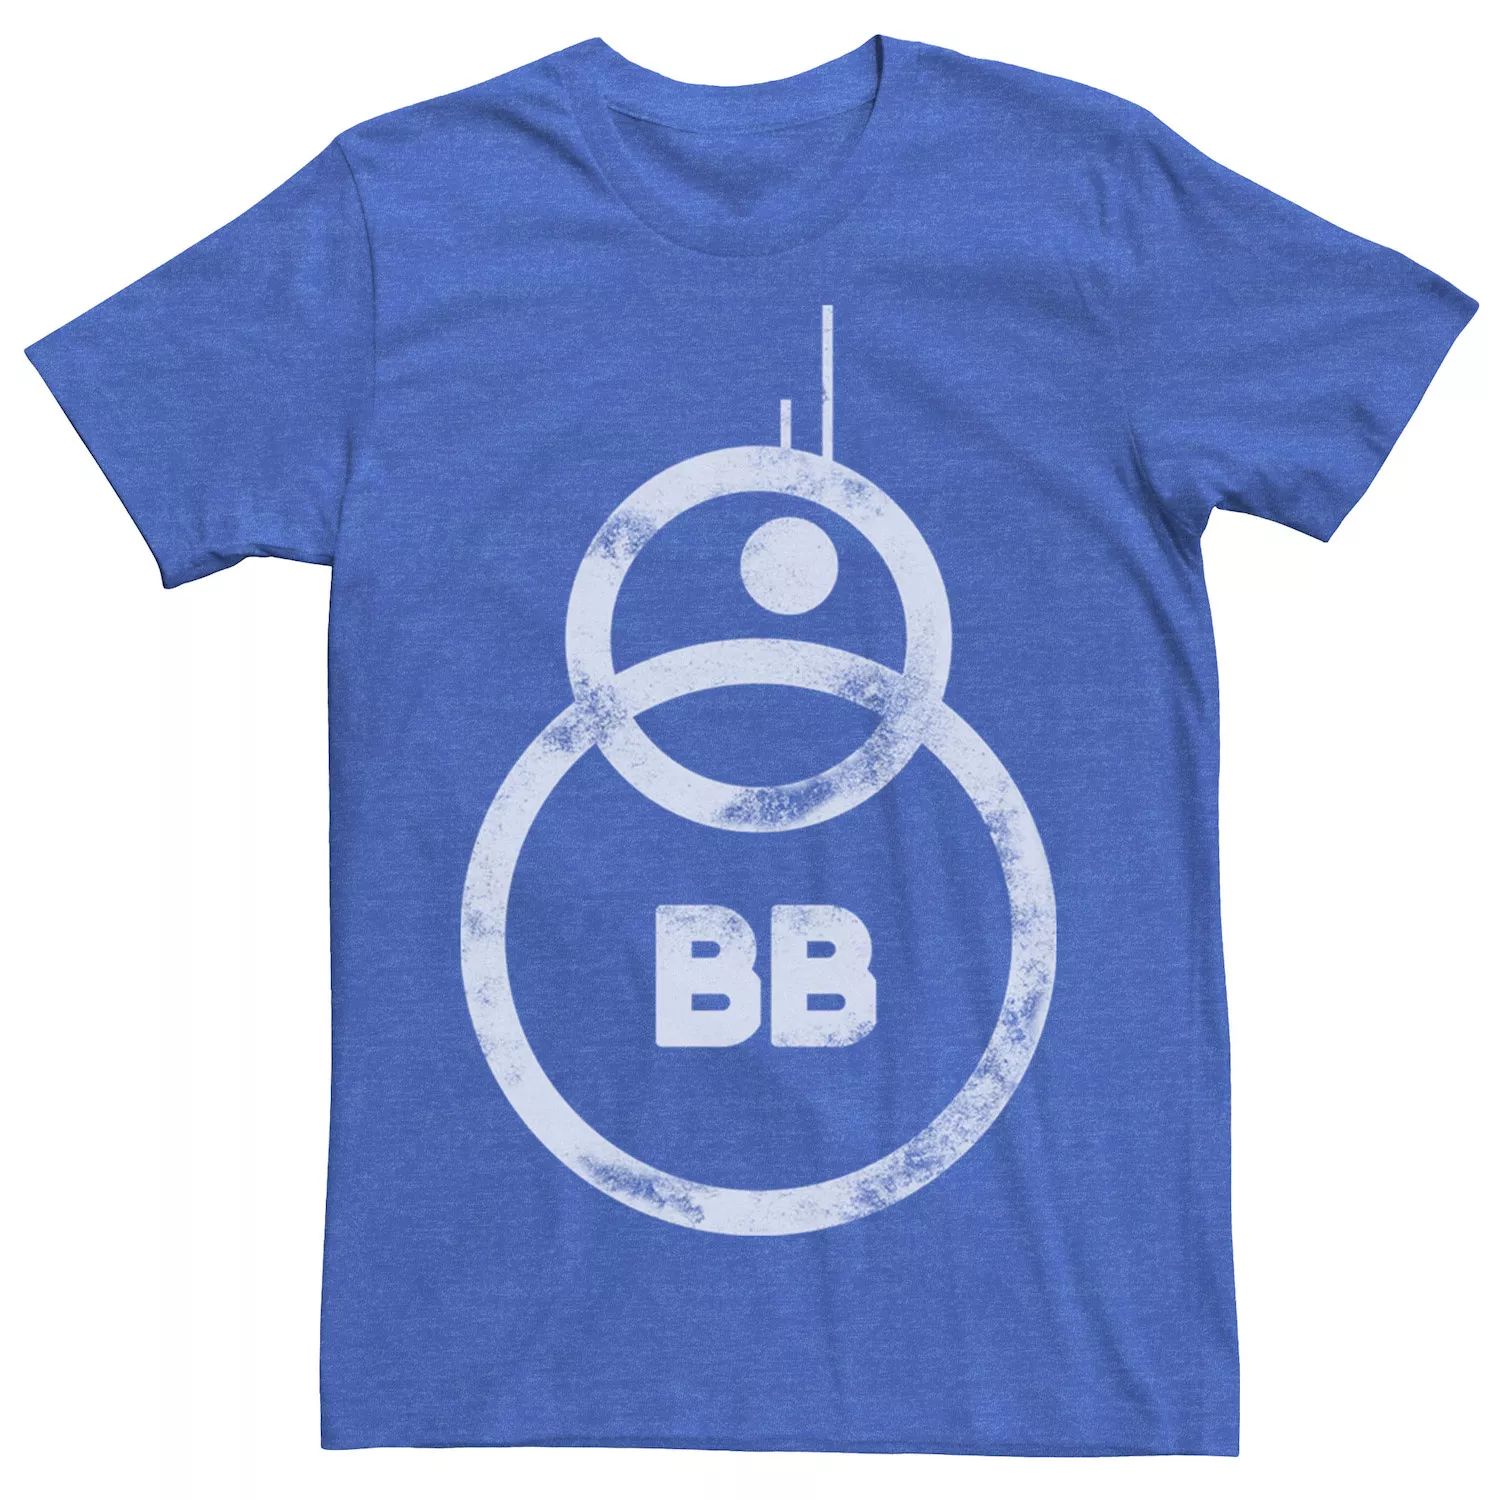 Мужская футболка BB-8 Star Wars h top royal star